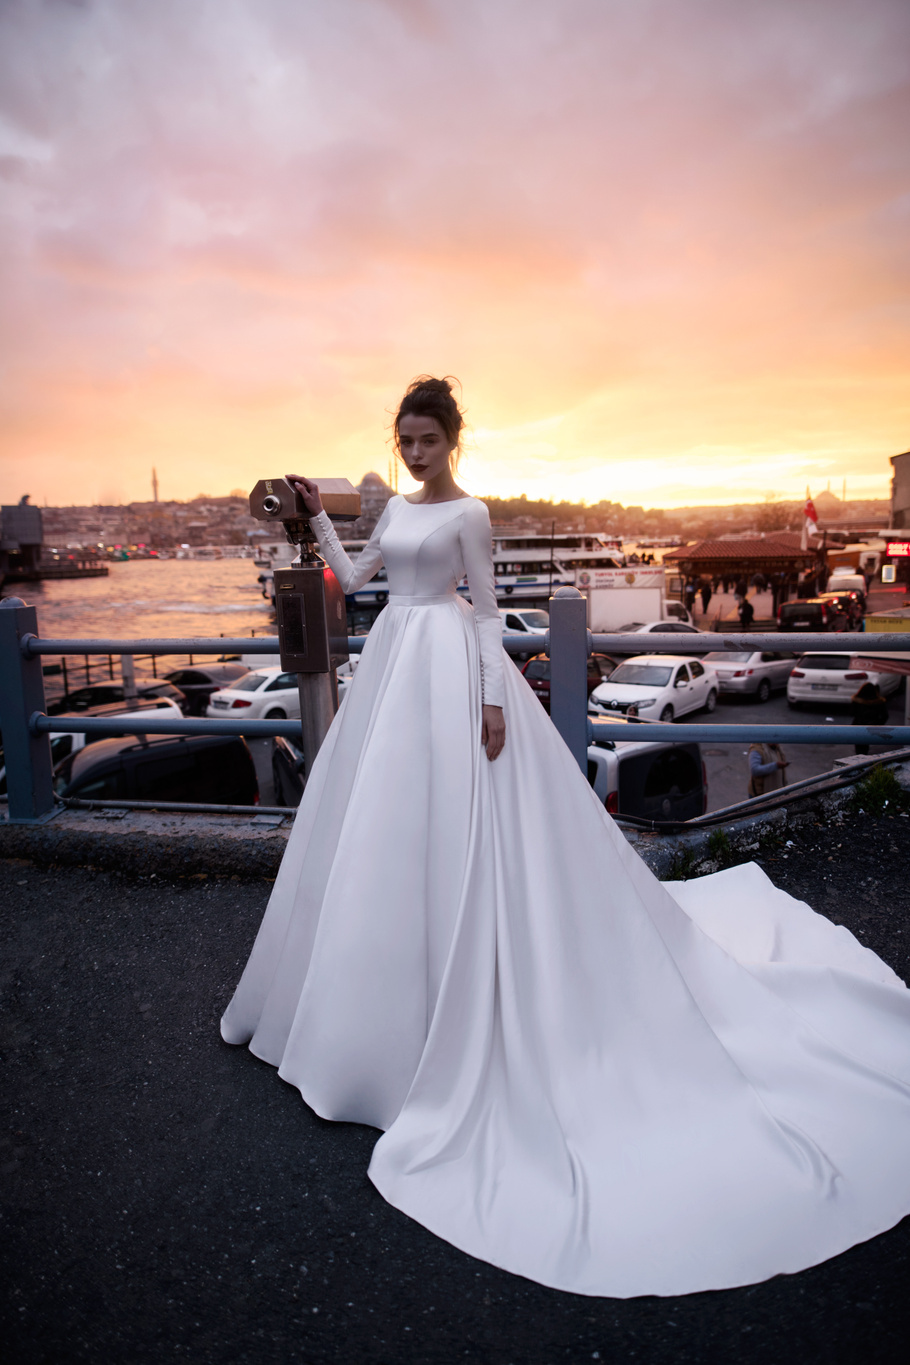 Купить свадебное платье «Тилда» Бламмо Биамо из коллекции 2018 года в Санкт-Петербурге